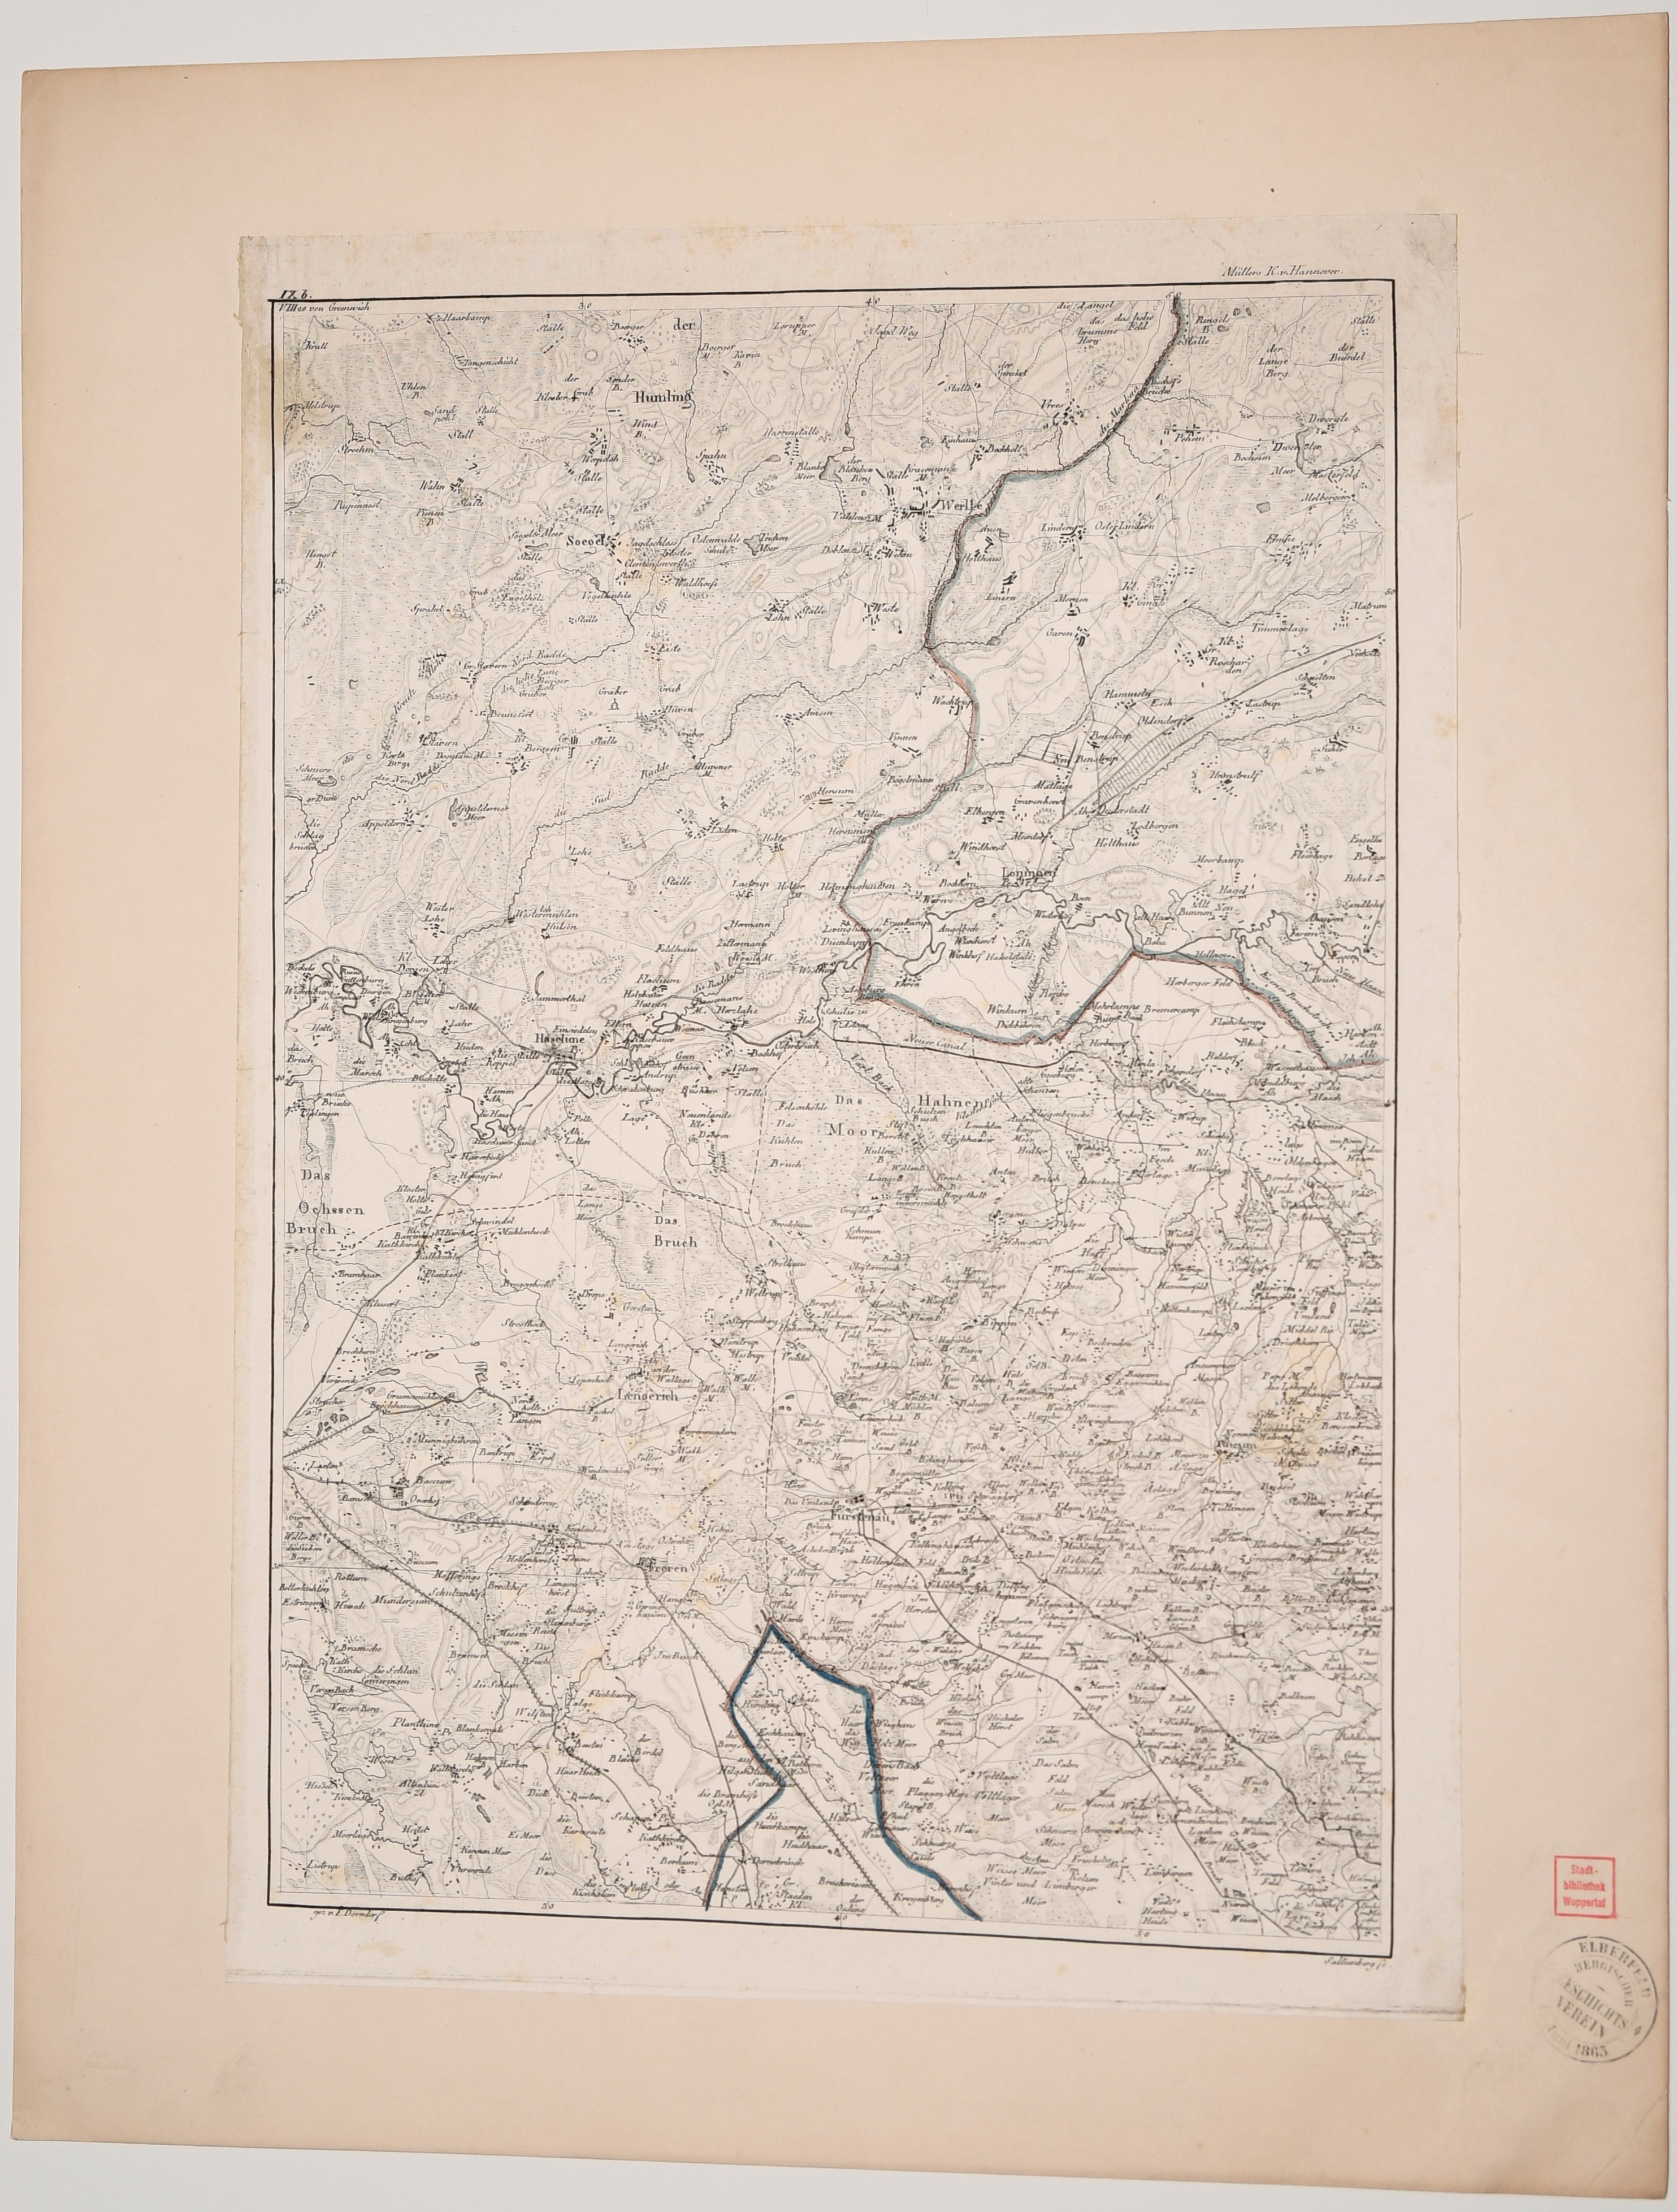 Karte "Das Hahnenmoor" und Umgebung ((C) Sammlung Bergischer Geschichtsverein e.V. CC BY-NC)